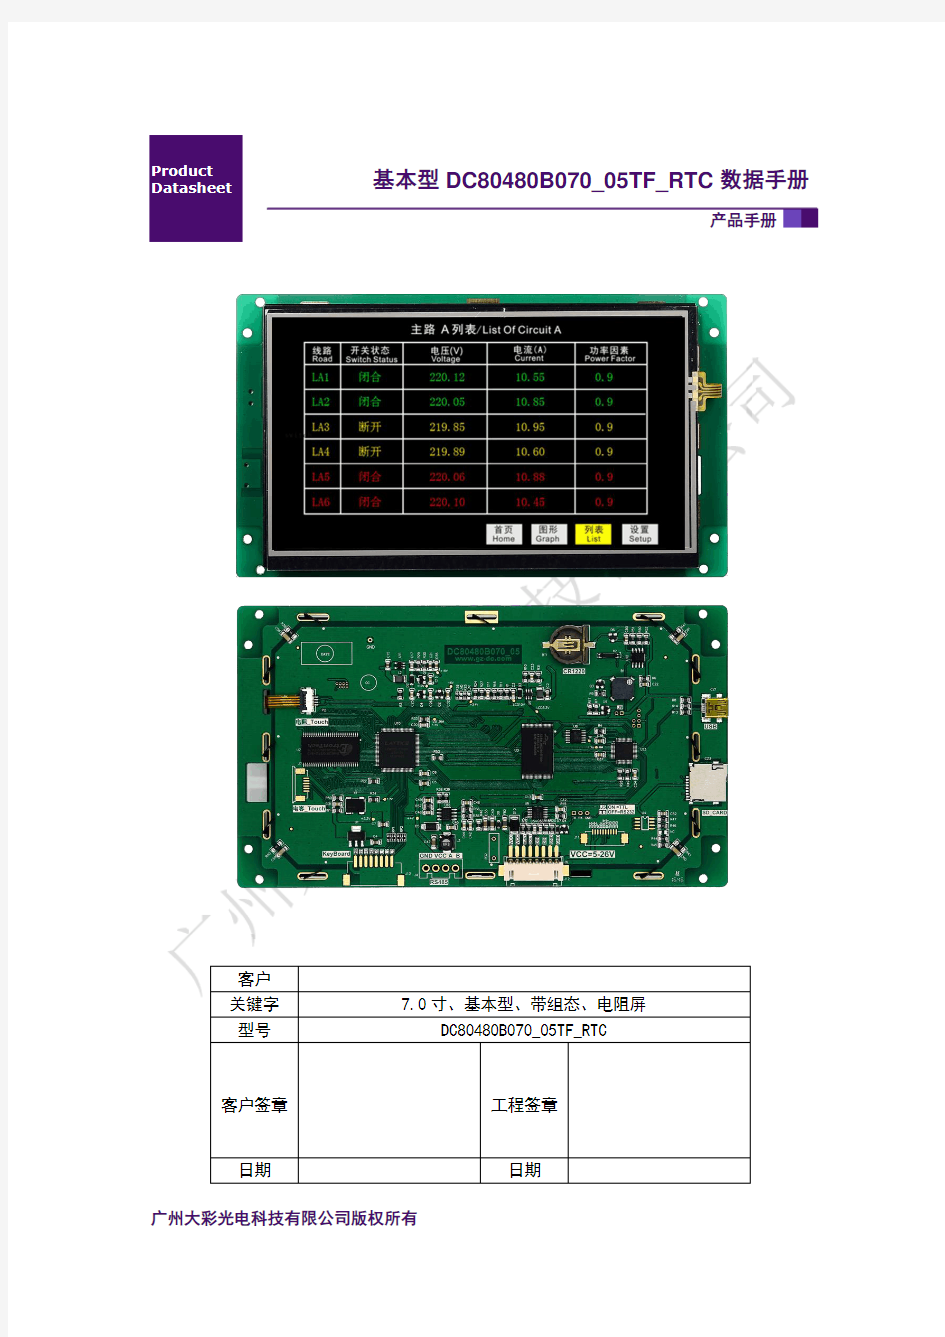 广州大彩串口屏数据手册—基本型7.0寸电阻触摸DC80480B070_05TF_RTC